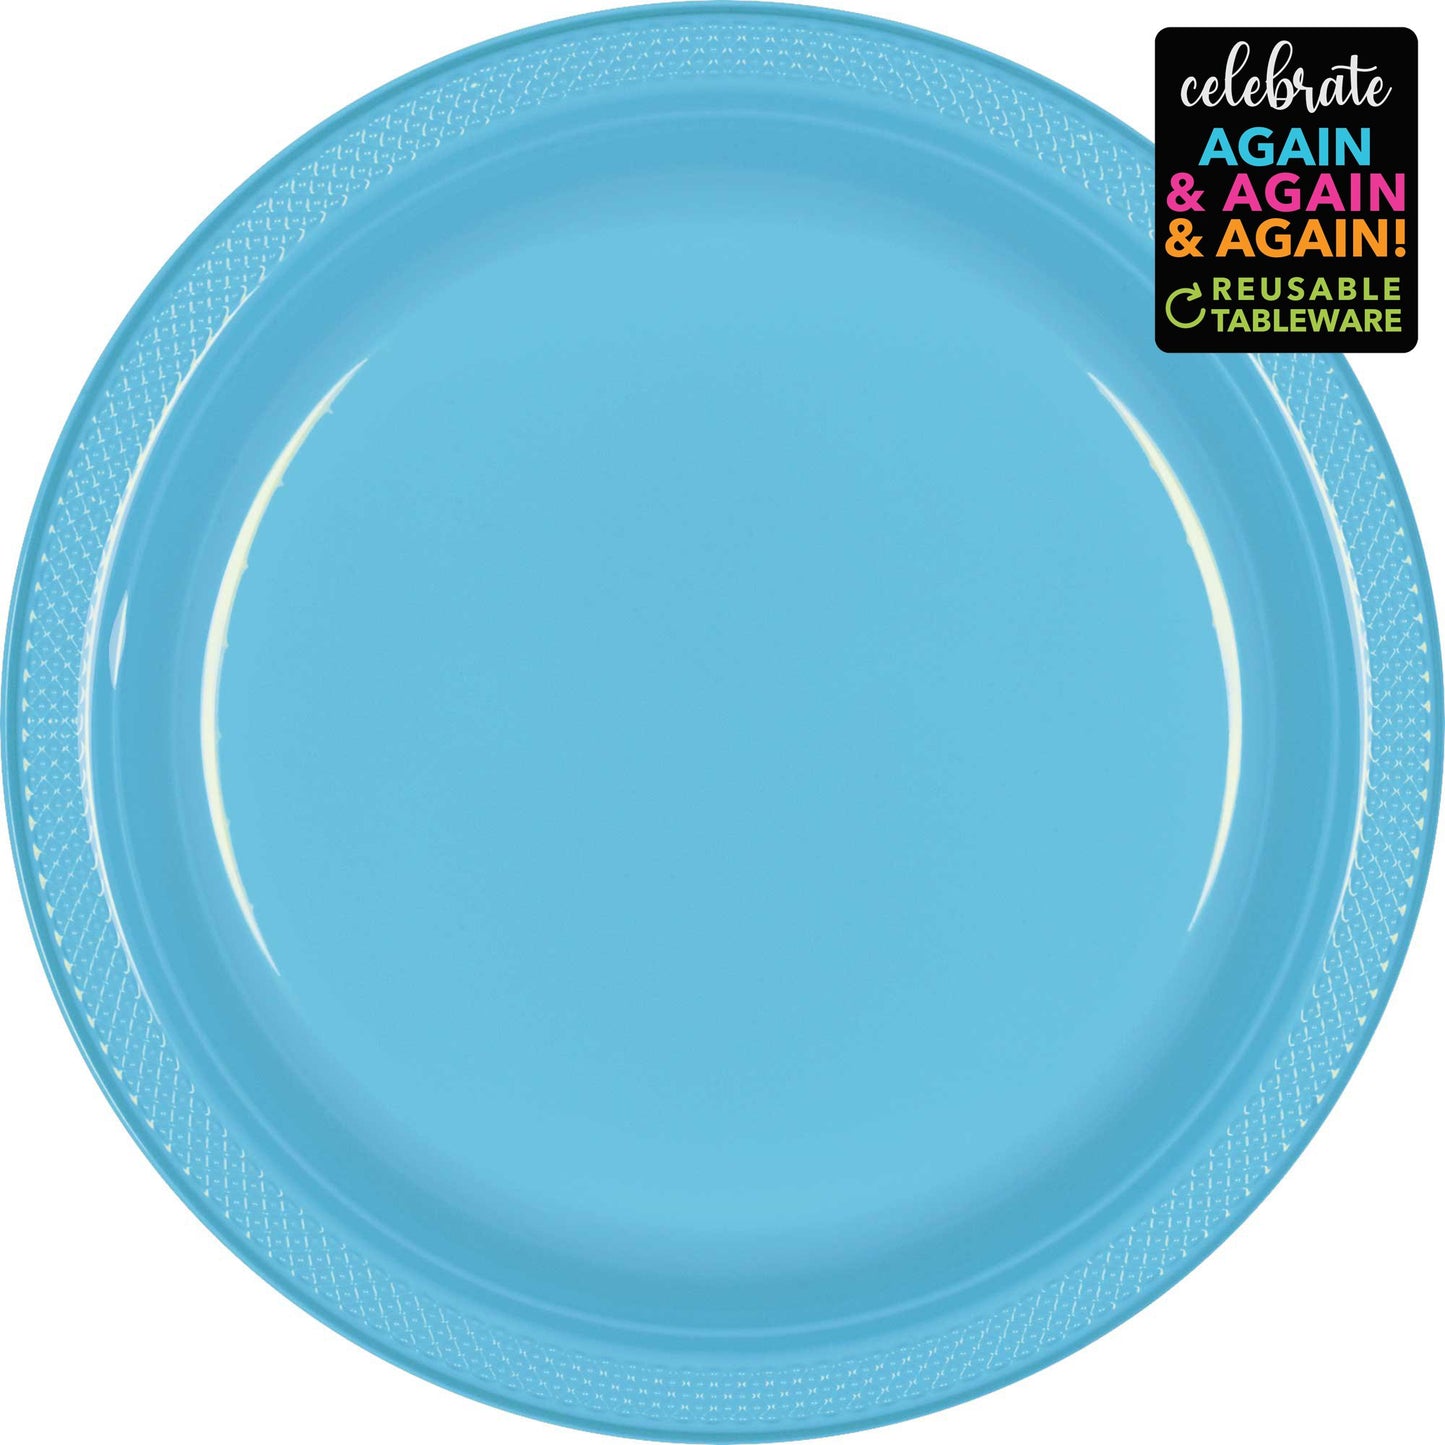 Premium Plastic Plates 23cm 20 Pack - Caribbean Blue